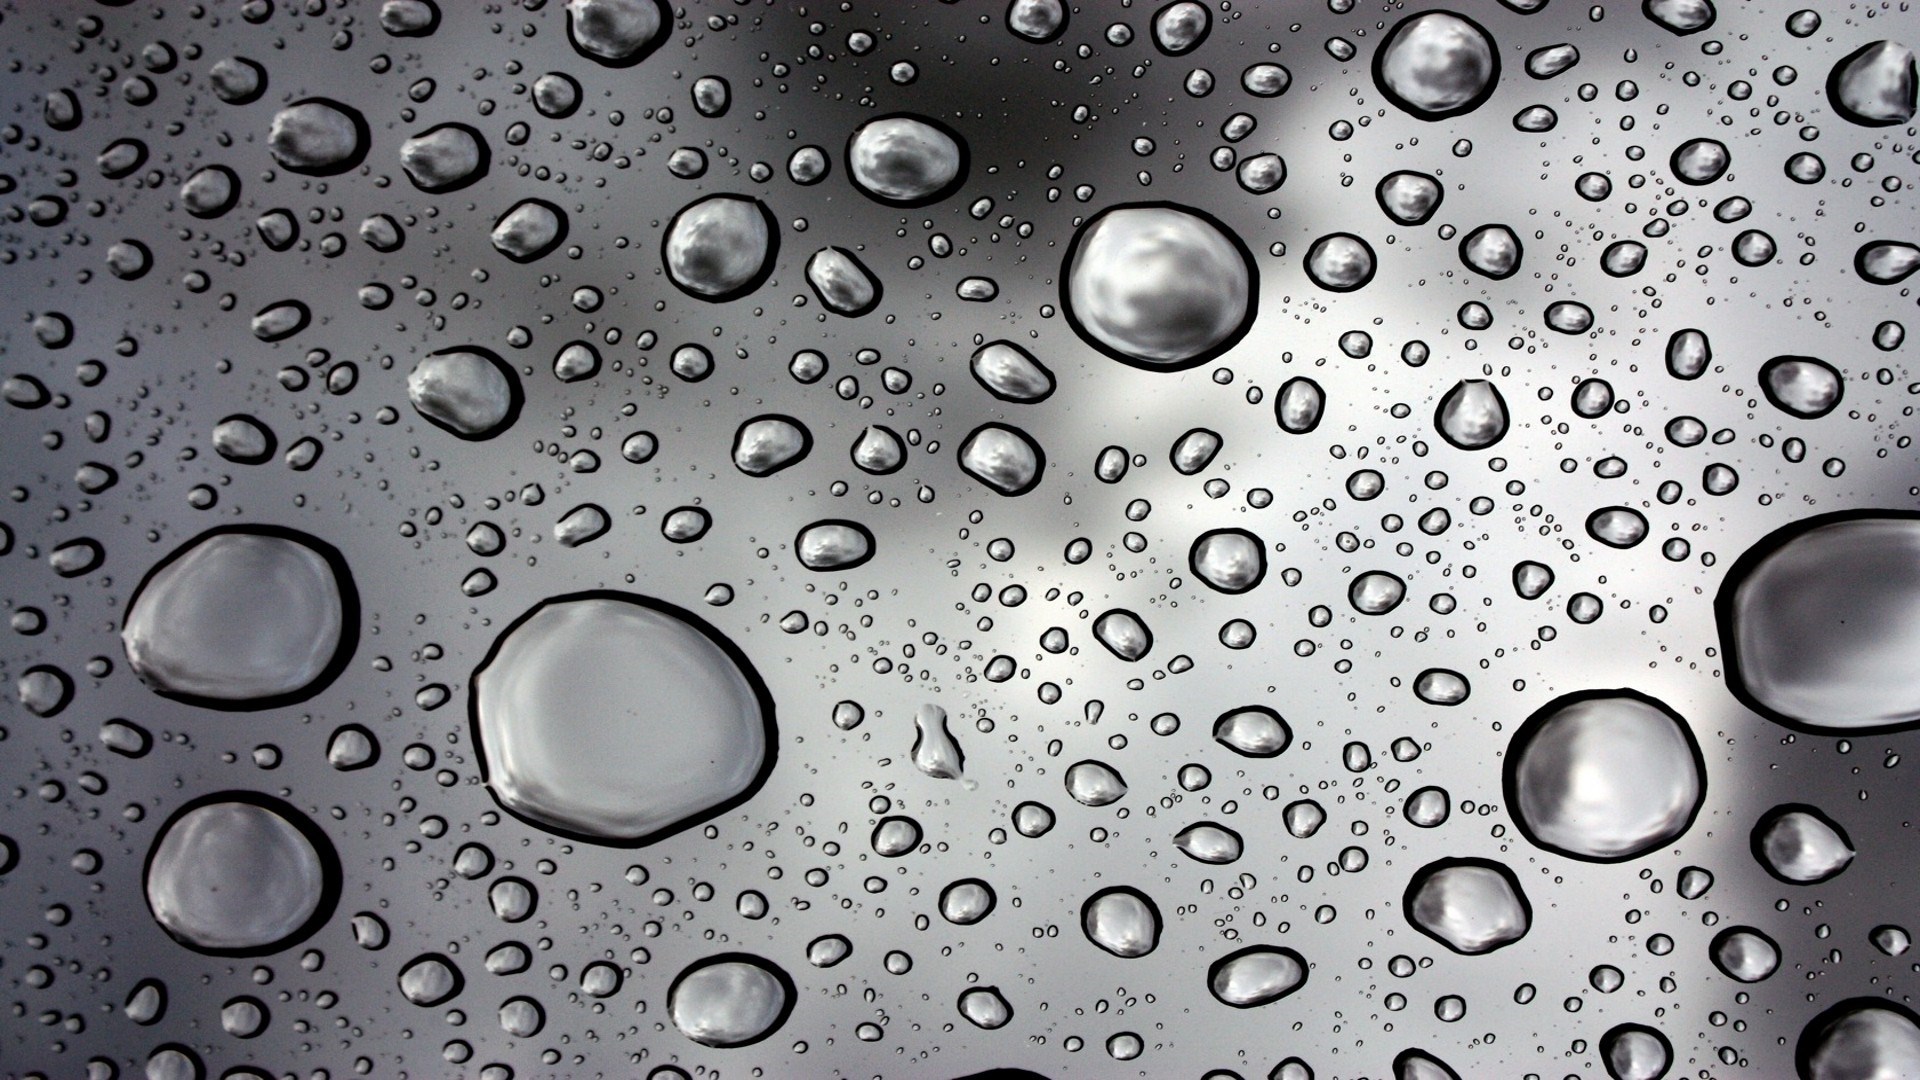 Rain Water Droplets Wallpaper [1920x1080]